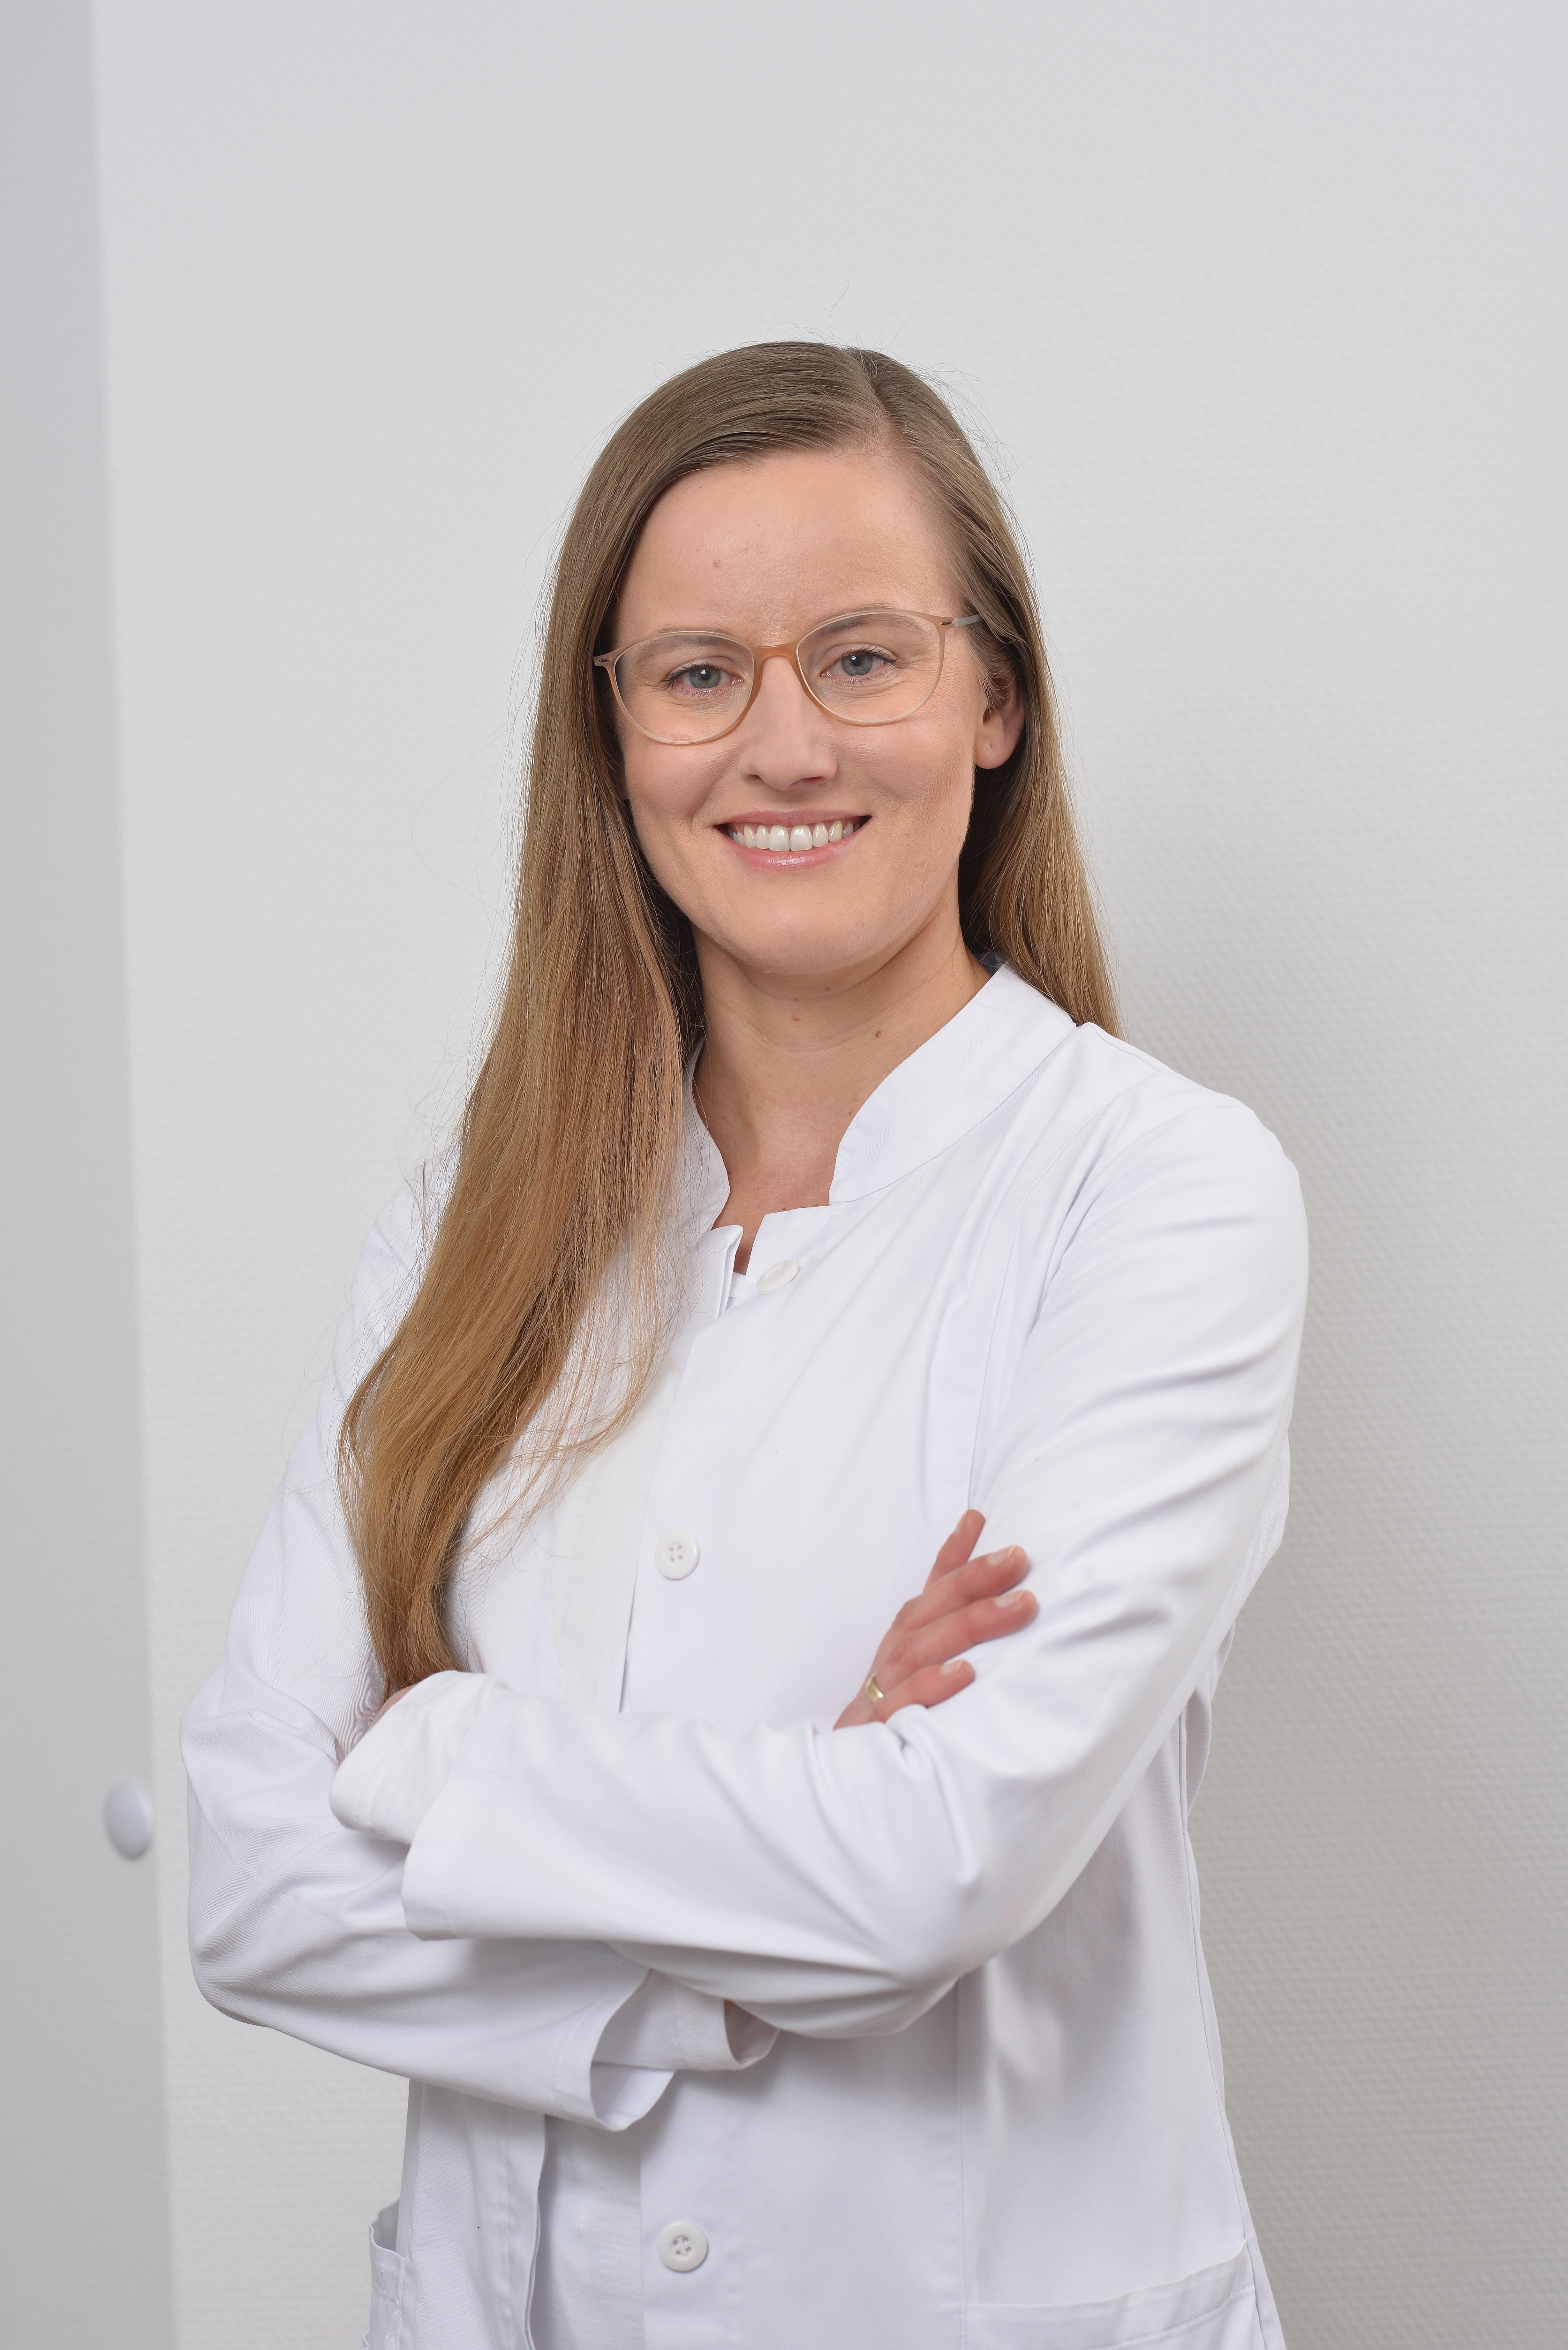 Marta Adaszewska
Fachärztin für Augenheilkunde